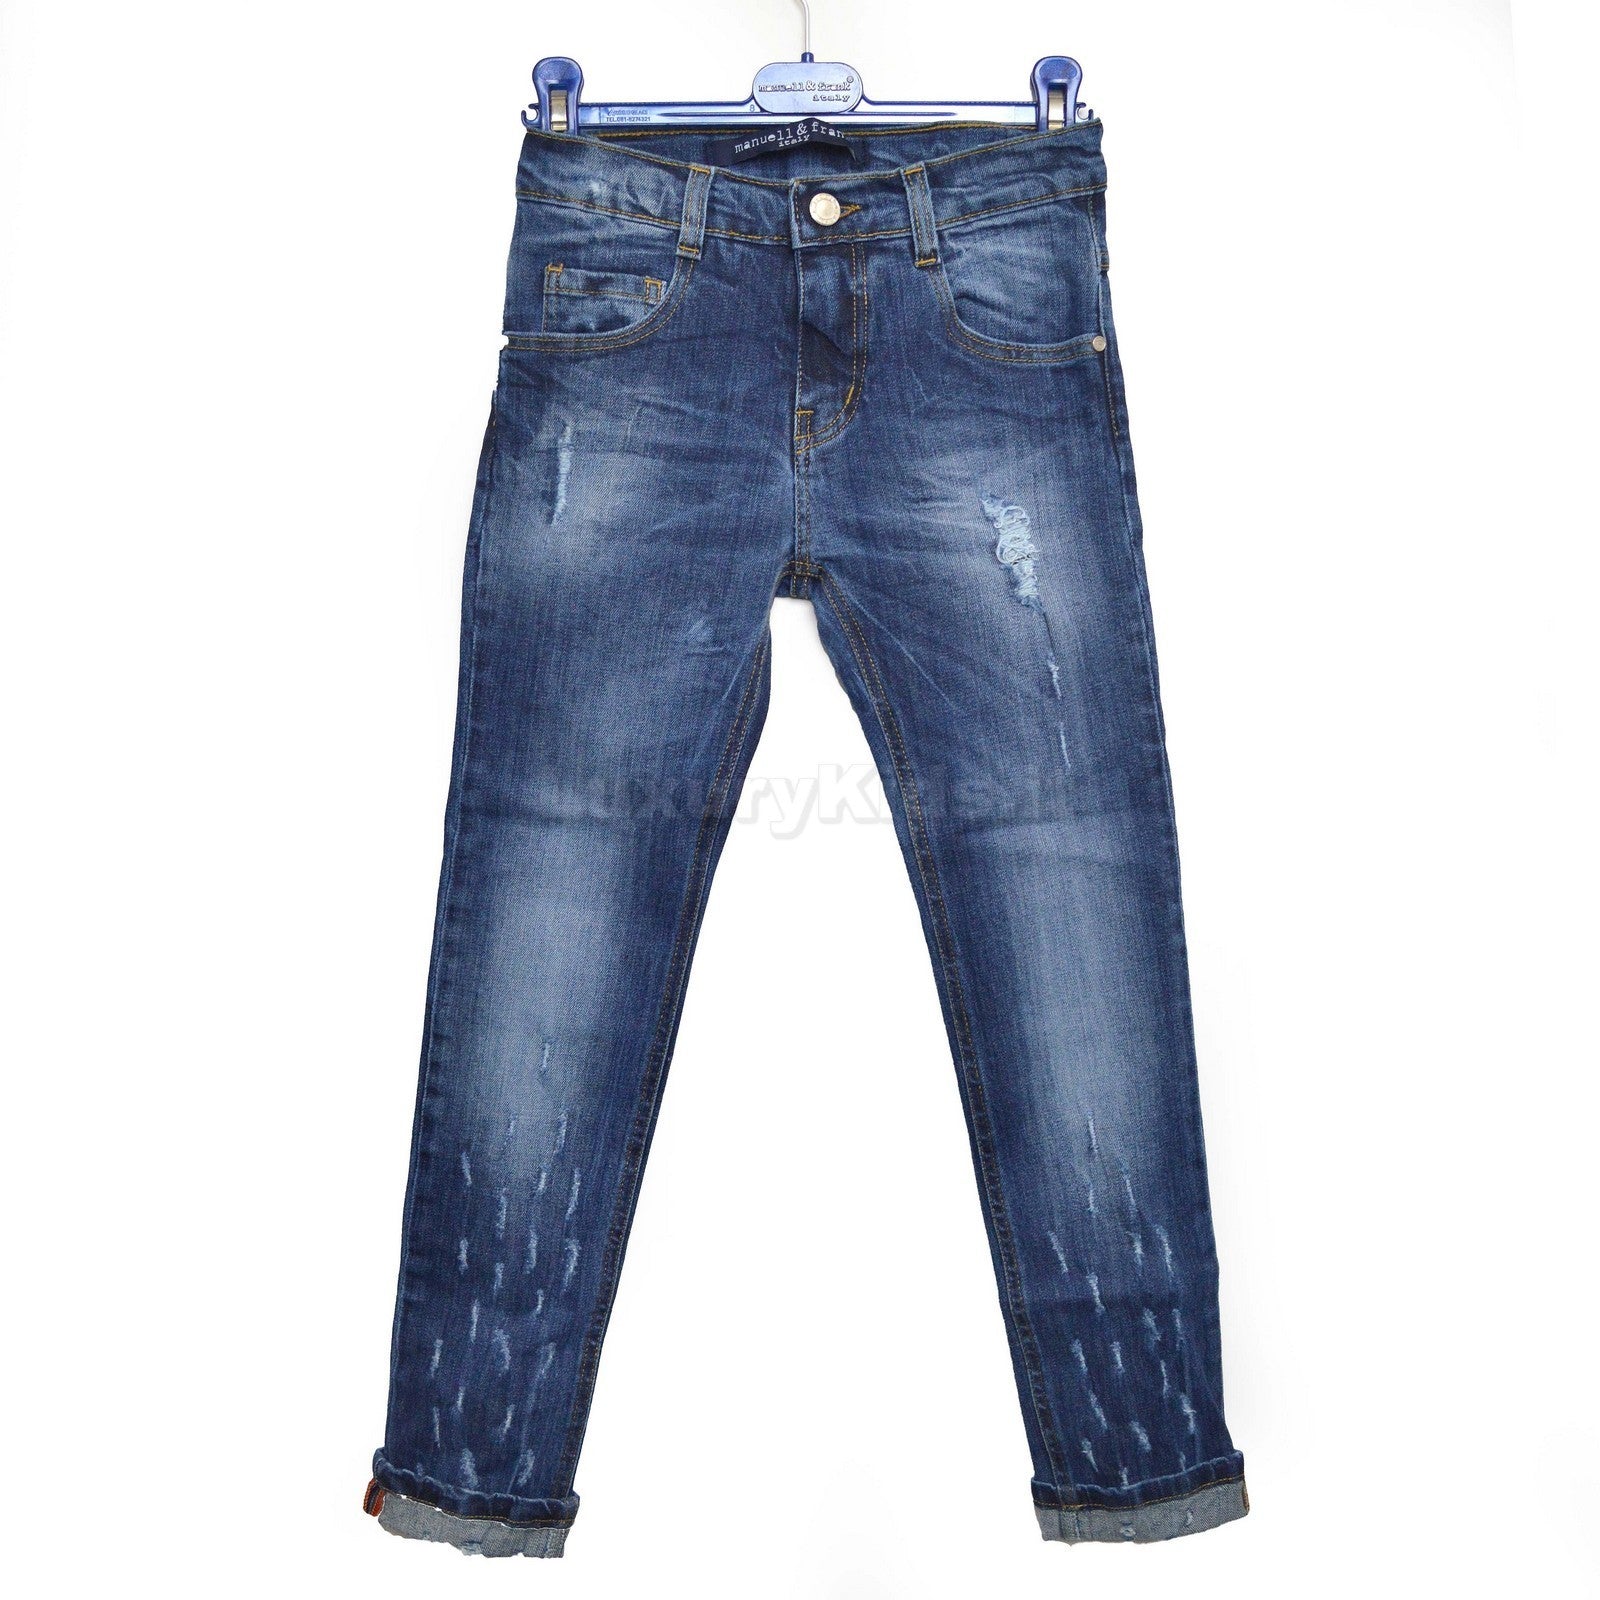 Jeans in Caldo Cotone Denim Effetto Strappato per Bambino Manuell&Frank MF1013R - MANUELL&FRANK - LuxuryKids